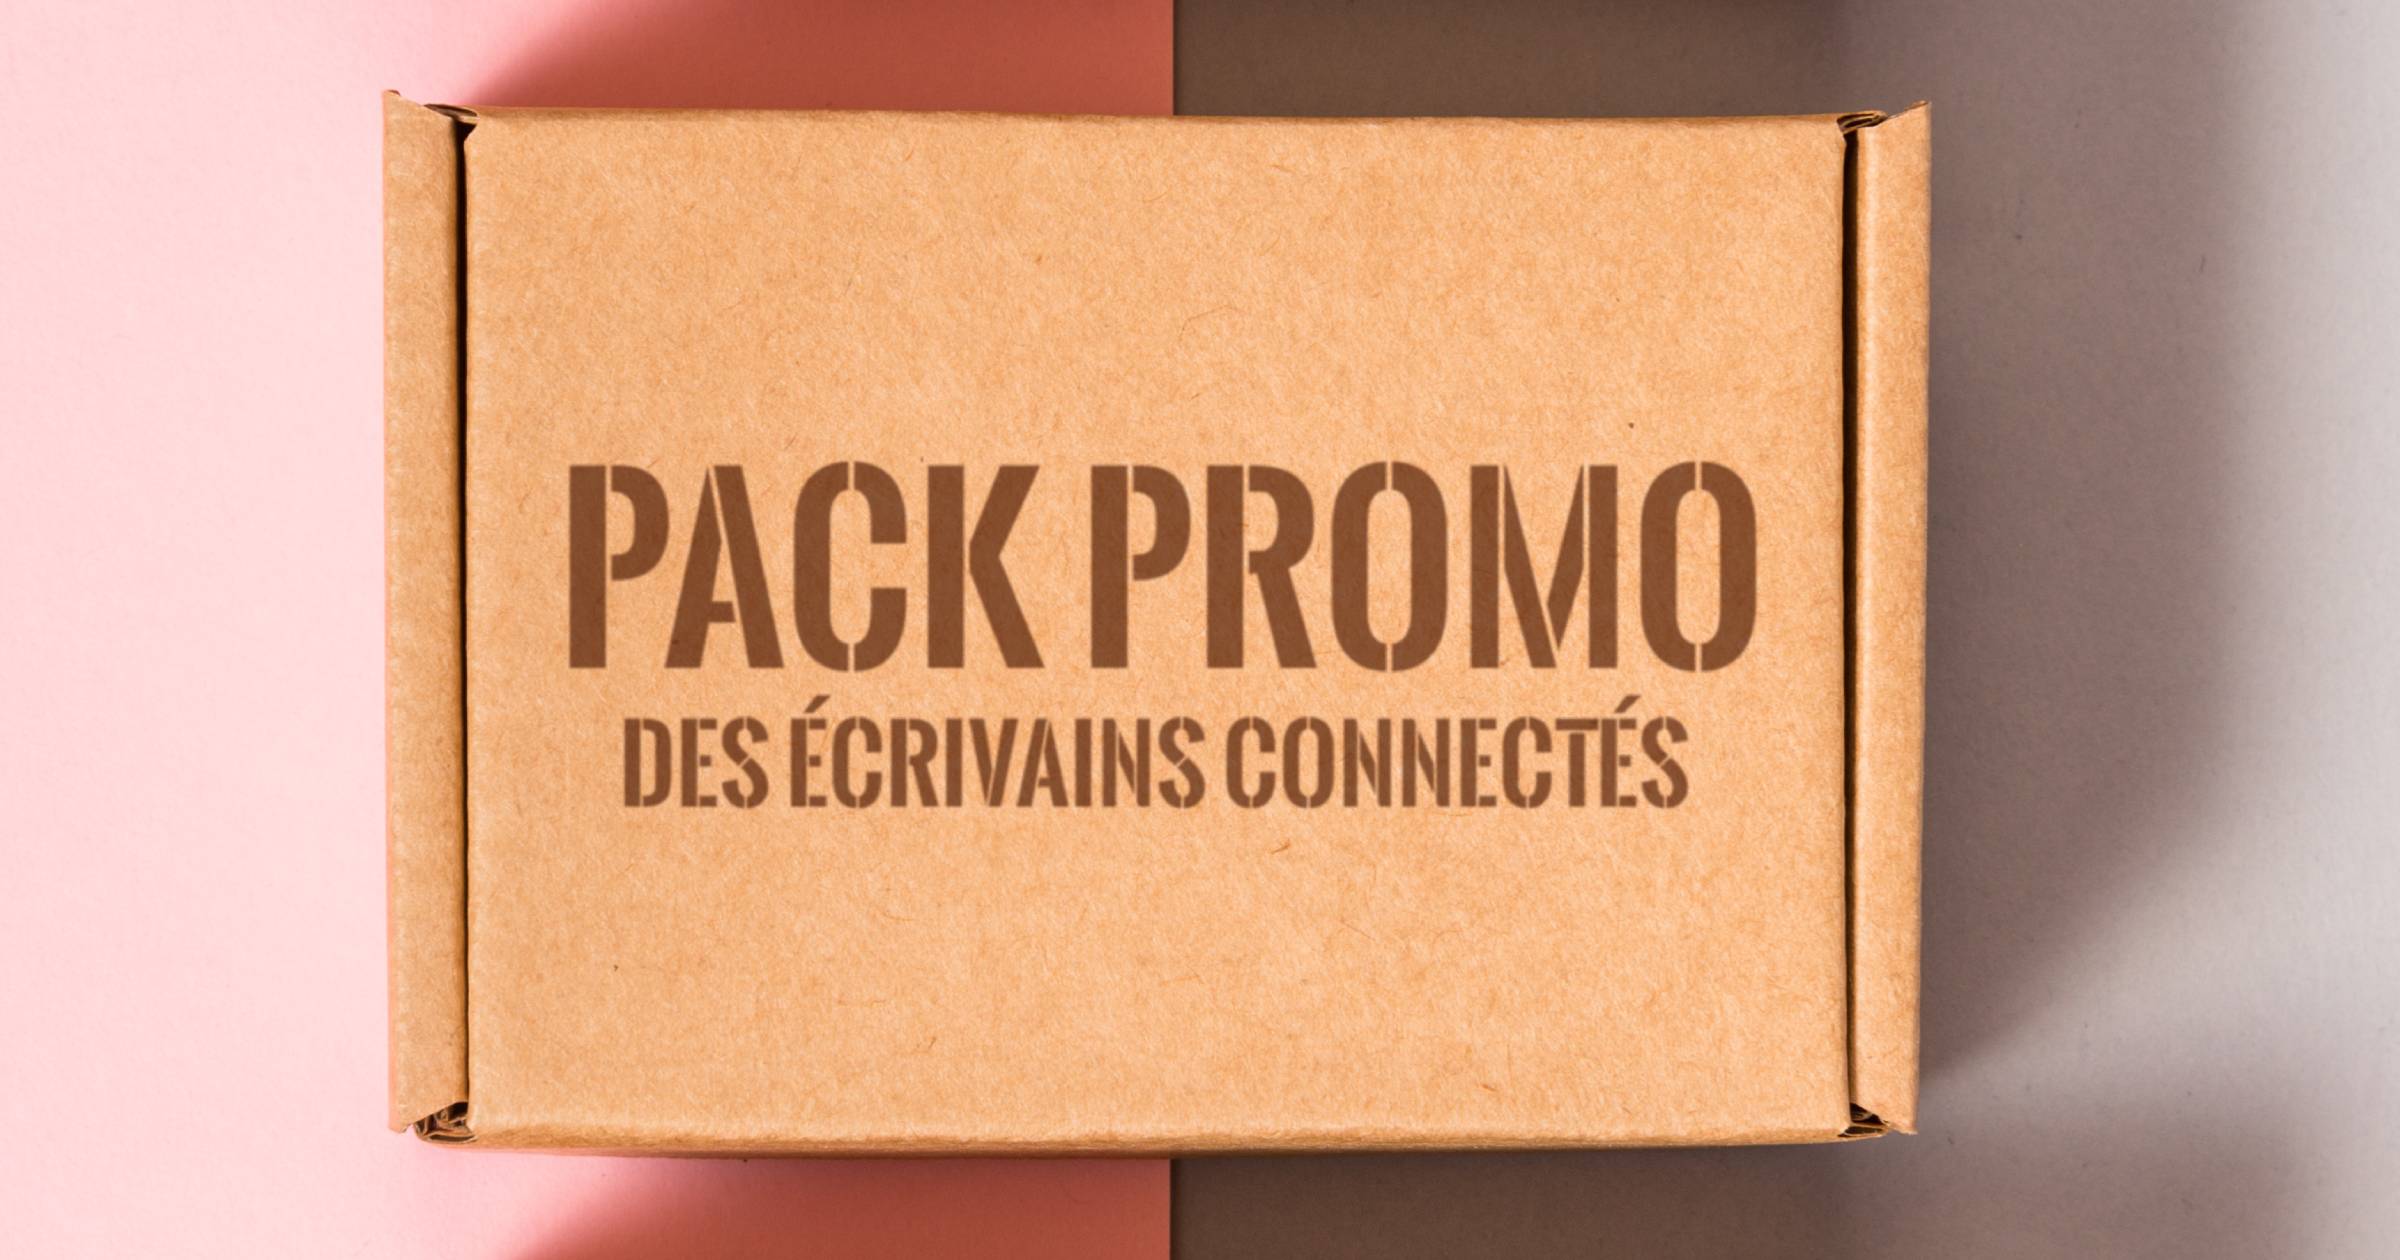 Le Pack Promo des écrivains connectés